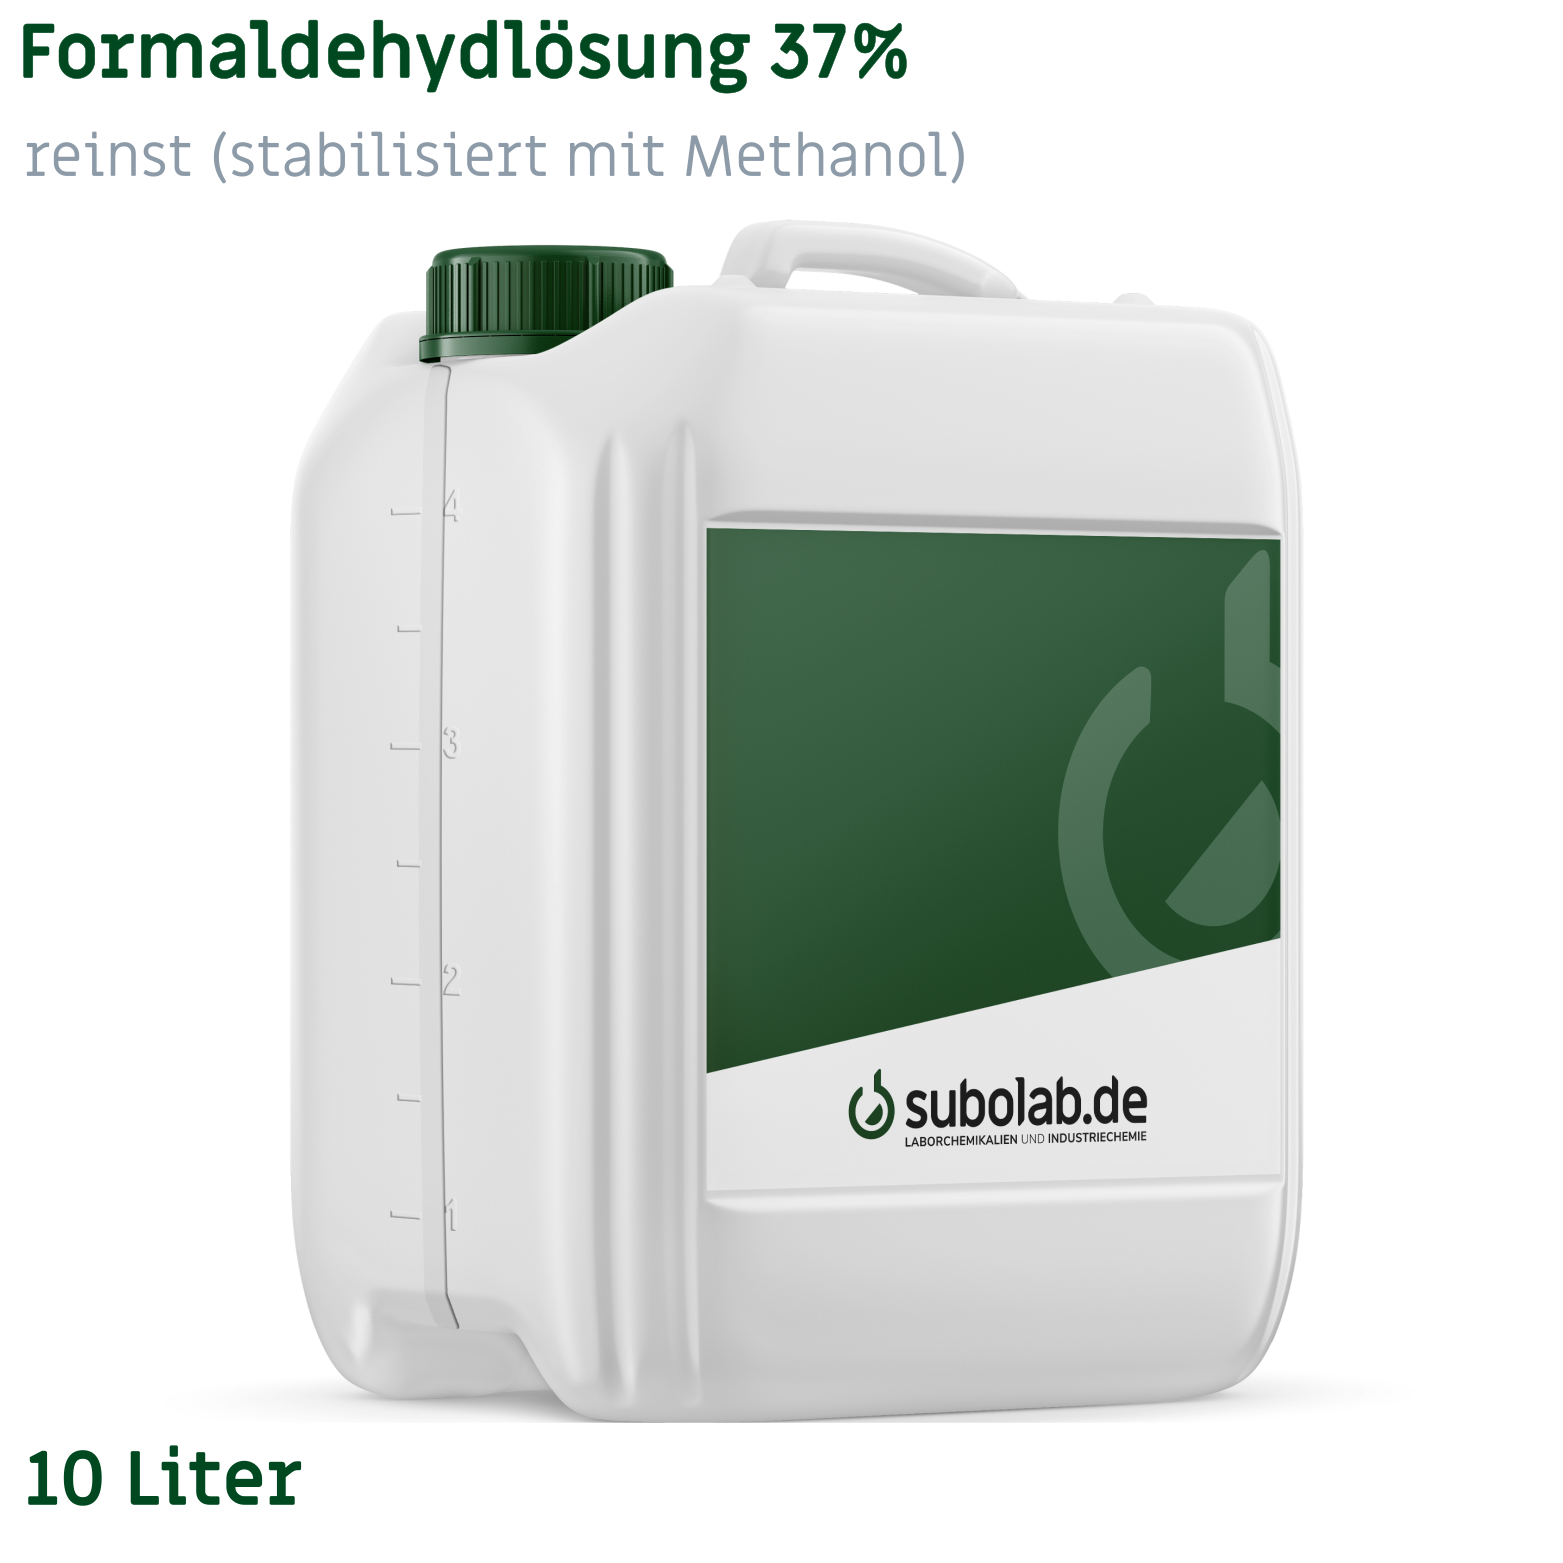 Bild von Formaldehydlösung 37% reinst (stabilisiert mit Methanol) (10 Liter)